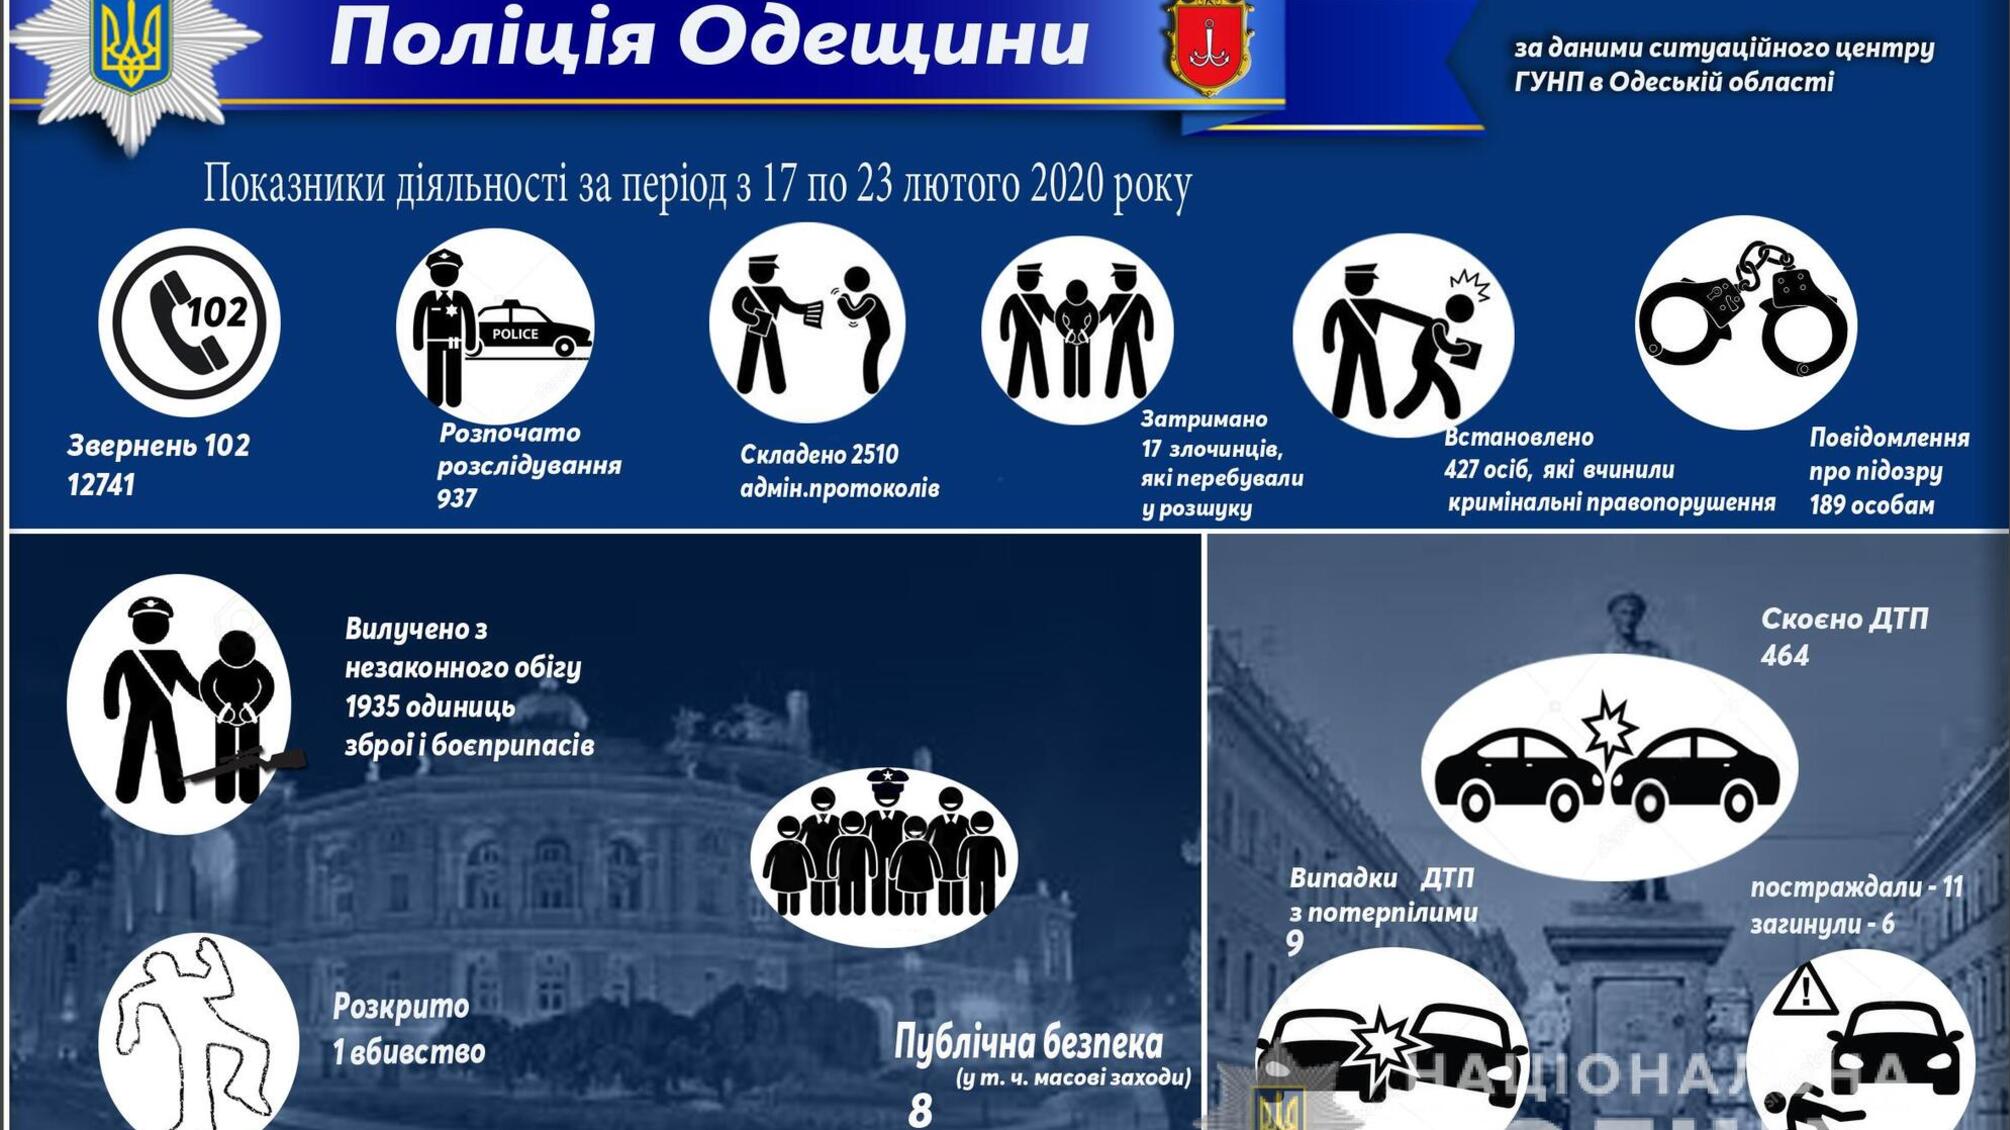 Результати оперативно-службової діяльності поліції Одещини за період з 17 по 23 лютого 2020 року